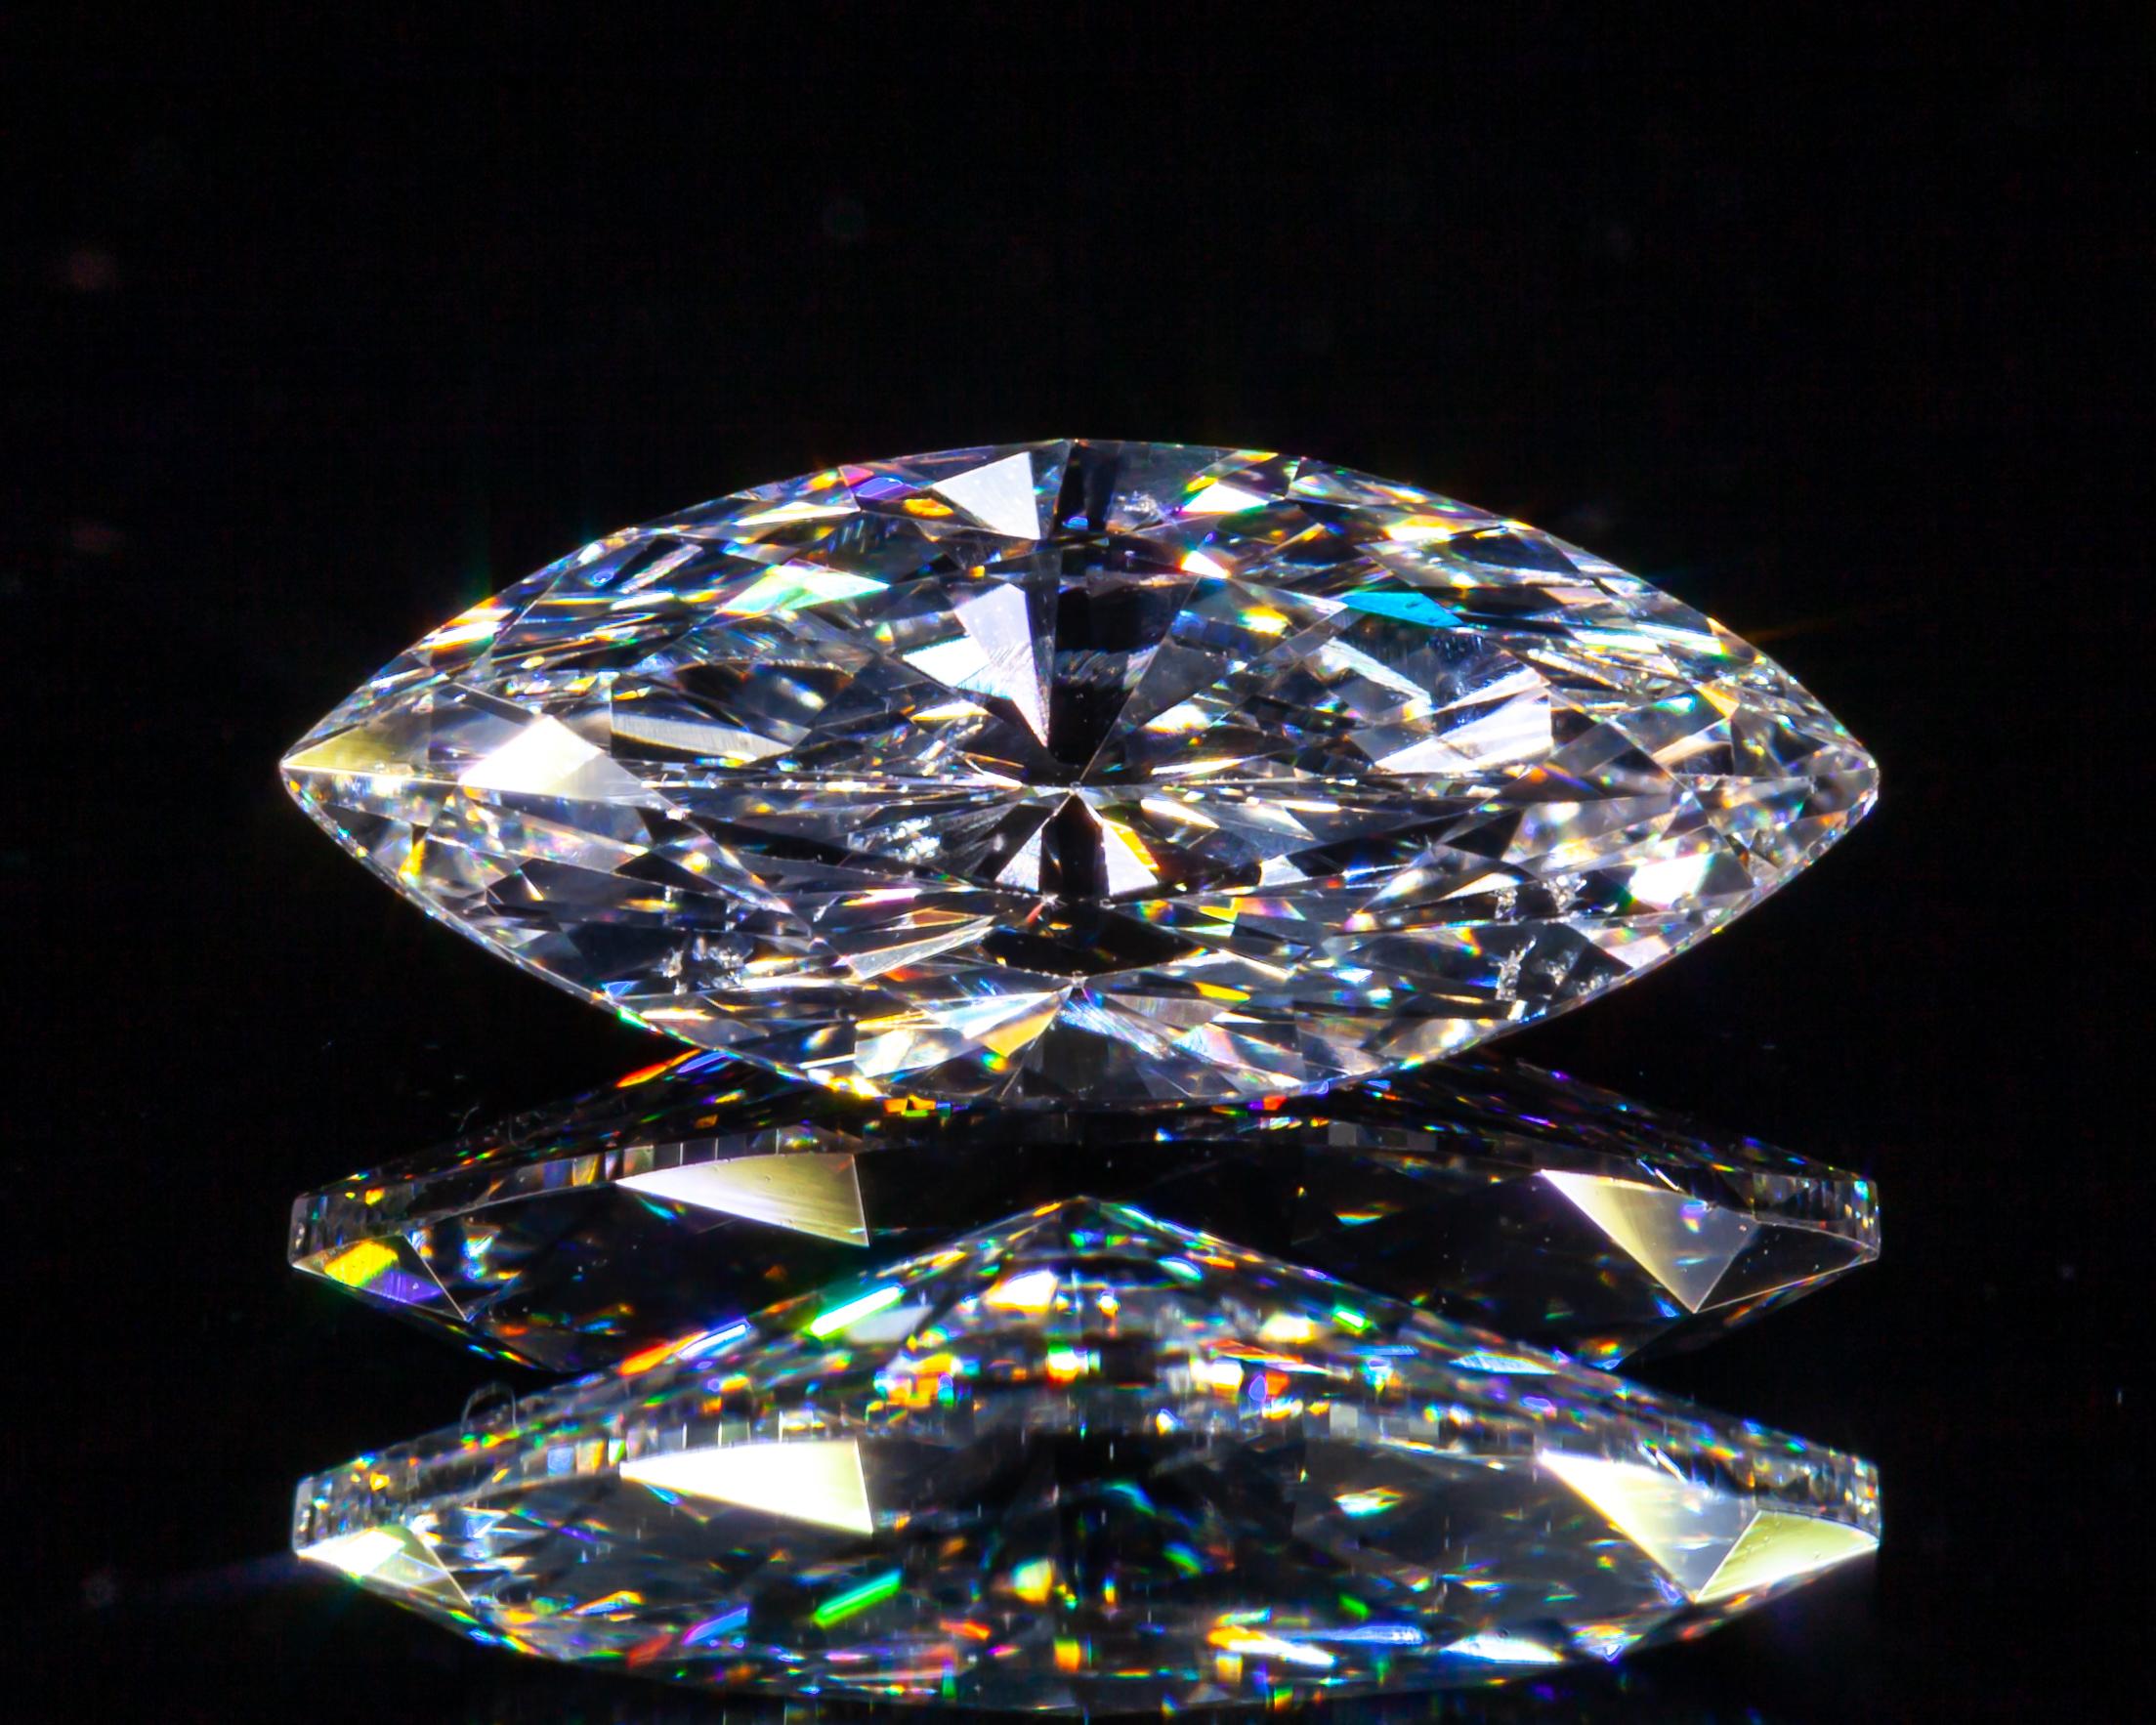 1,10 Karat Loser D / I1 Marquise-Diamant im Brillantschliff GIA zertifiziert

Diamant Allgemeine Informationen
GIA-Berichtsnummer: 2185448158
Diamant-Schliff: Marquise Brillant 
Abmessungen: 11,10 x 5,02 x 3,37 mm

Ergebnisse der